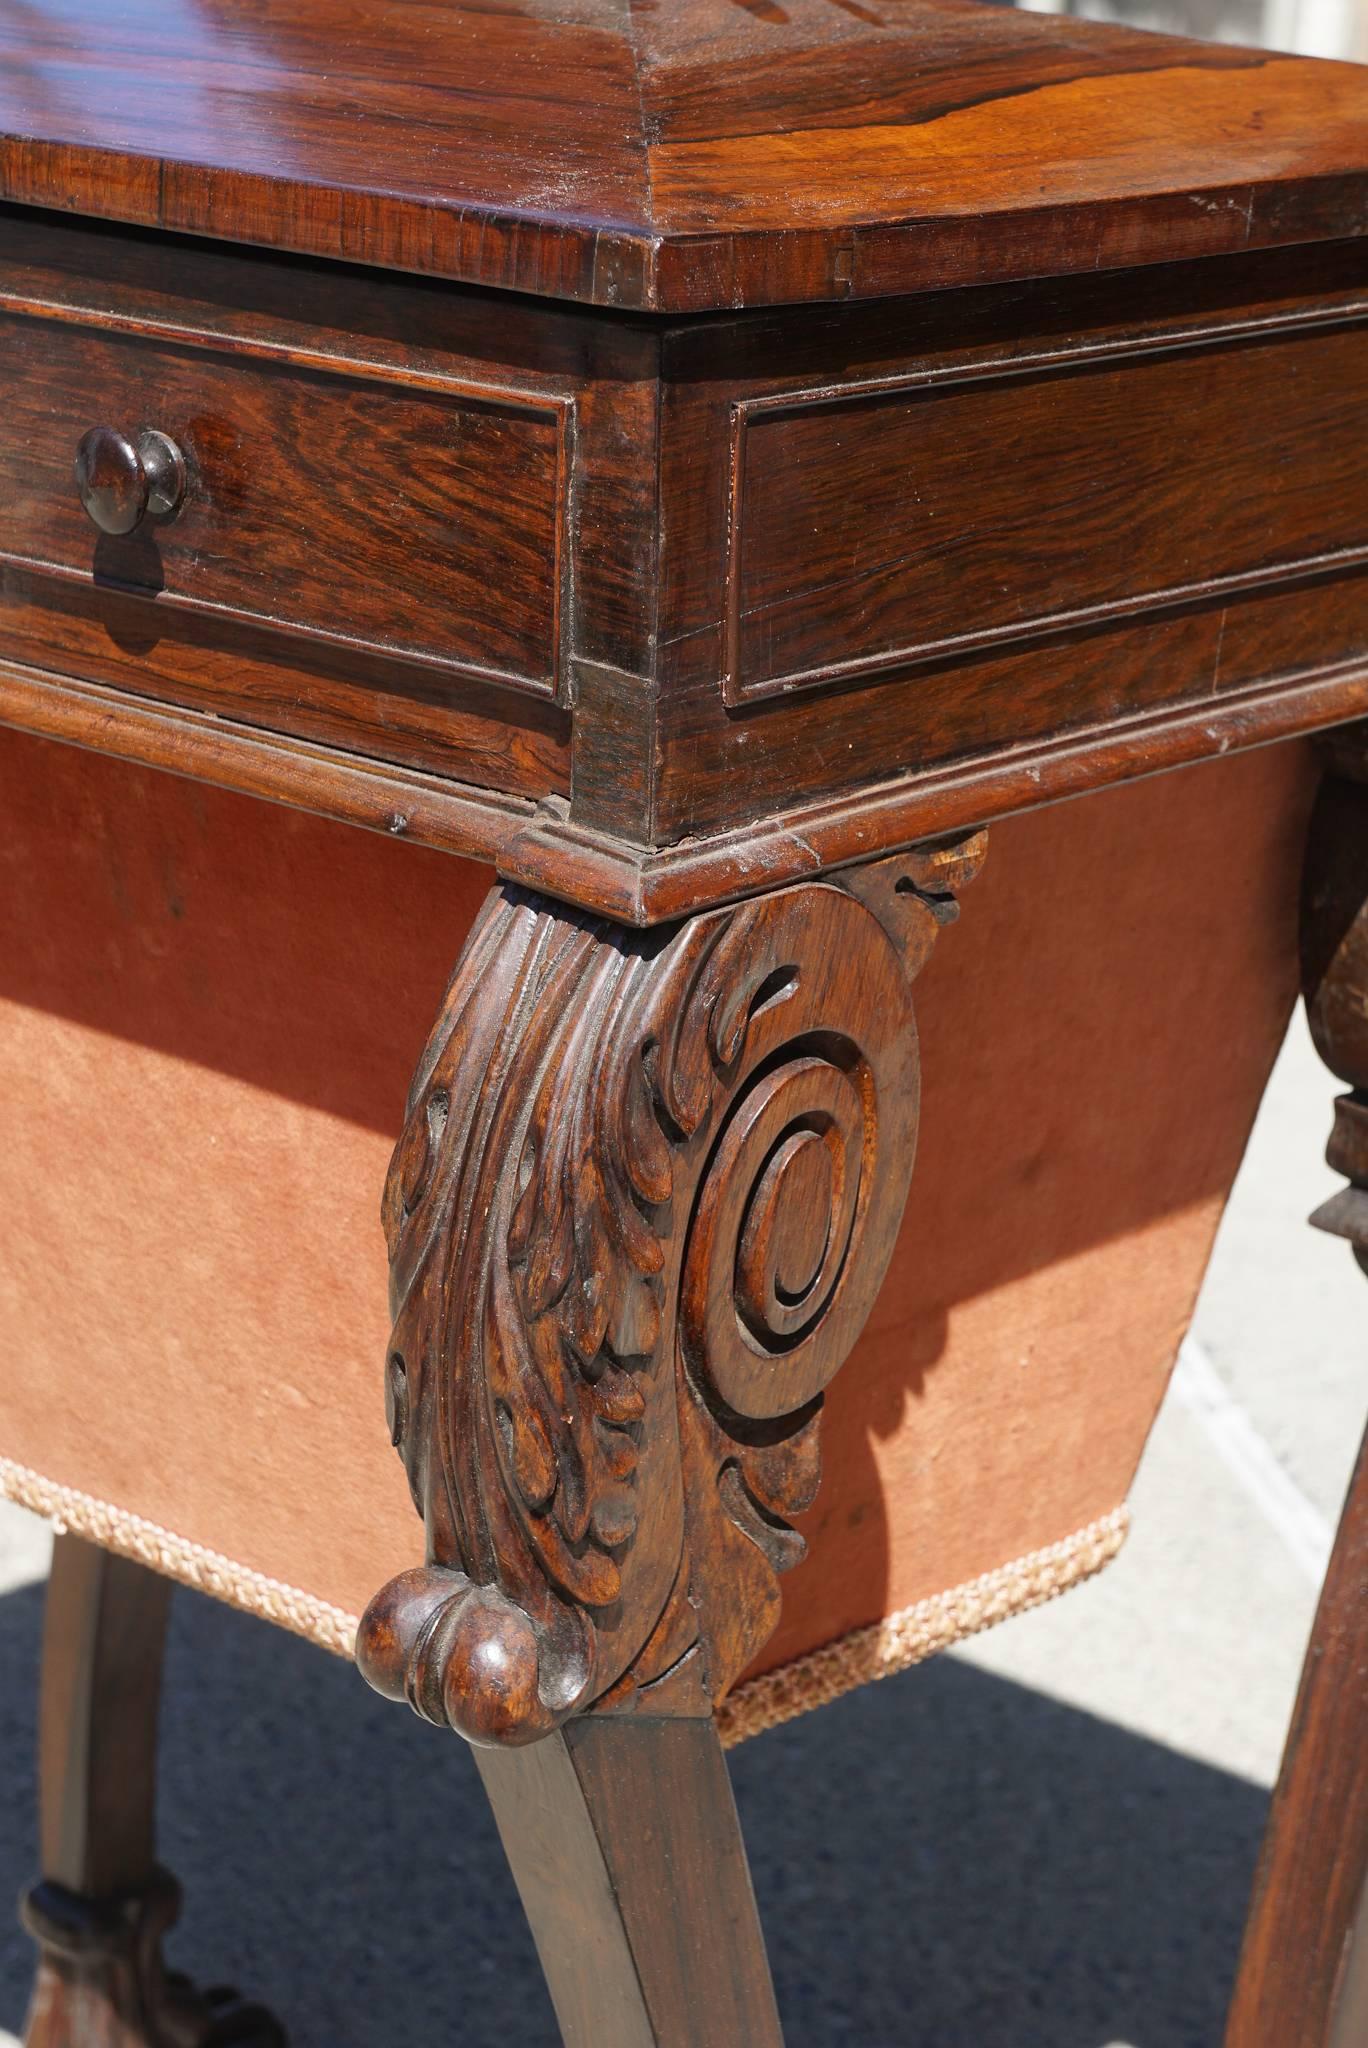 Dieser feine, um 1810 in England gefertigte Arbeitstisch hat eine ungewöhnliche skulpturale Form und bezieht sich auf die Arbeit von George Smith, einem der einflussreichsten Designer der Zeit. Der Sarkophag steht auf kühn geschnitzten,